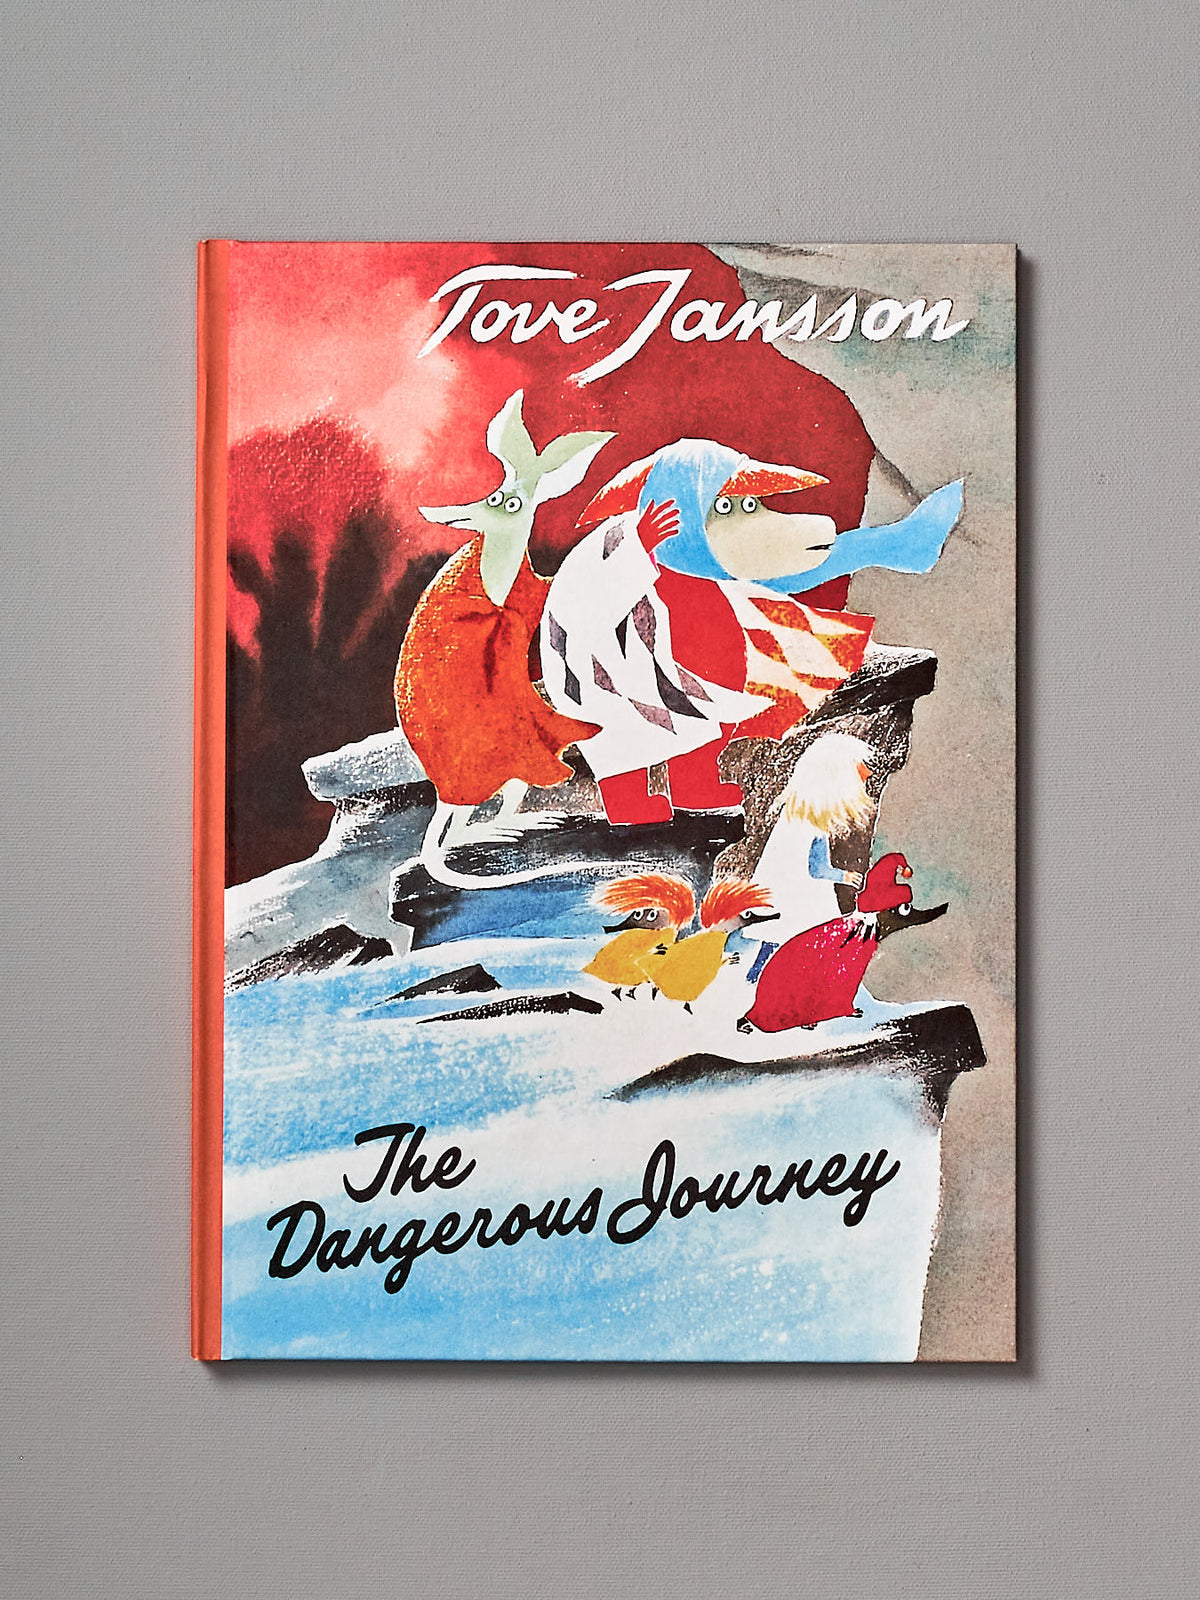 Tove Jansson&#39;s book, The Dangerous Journey.